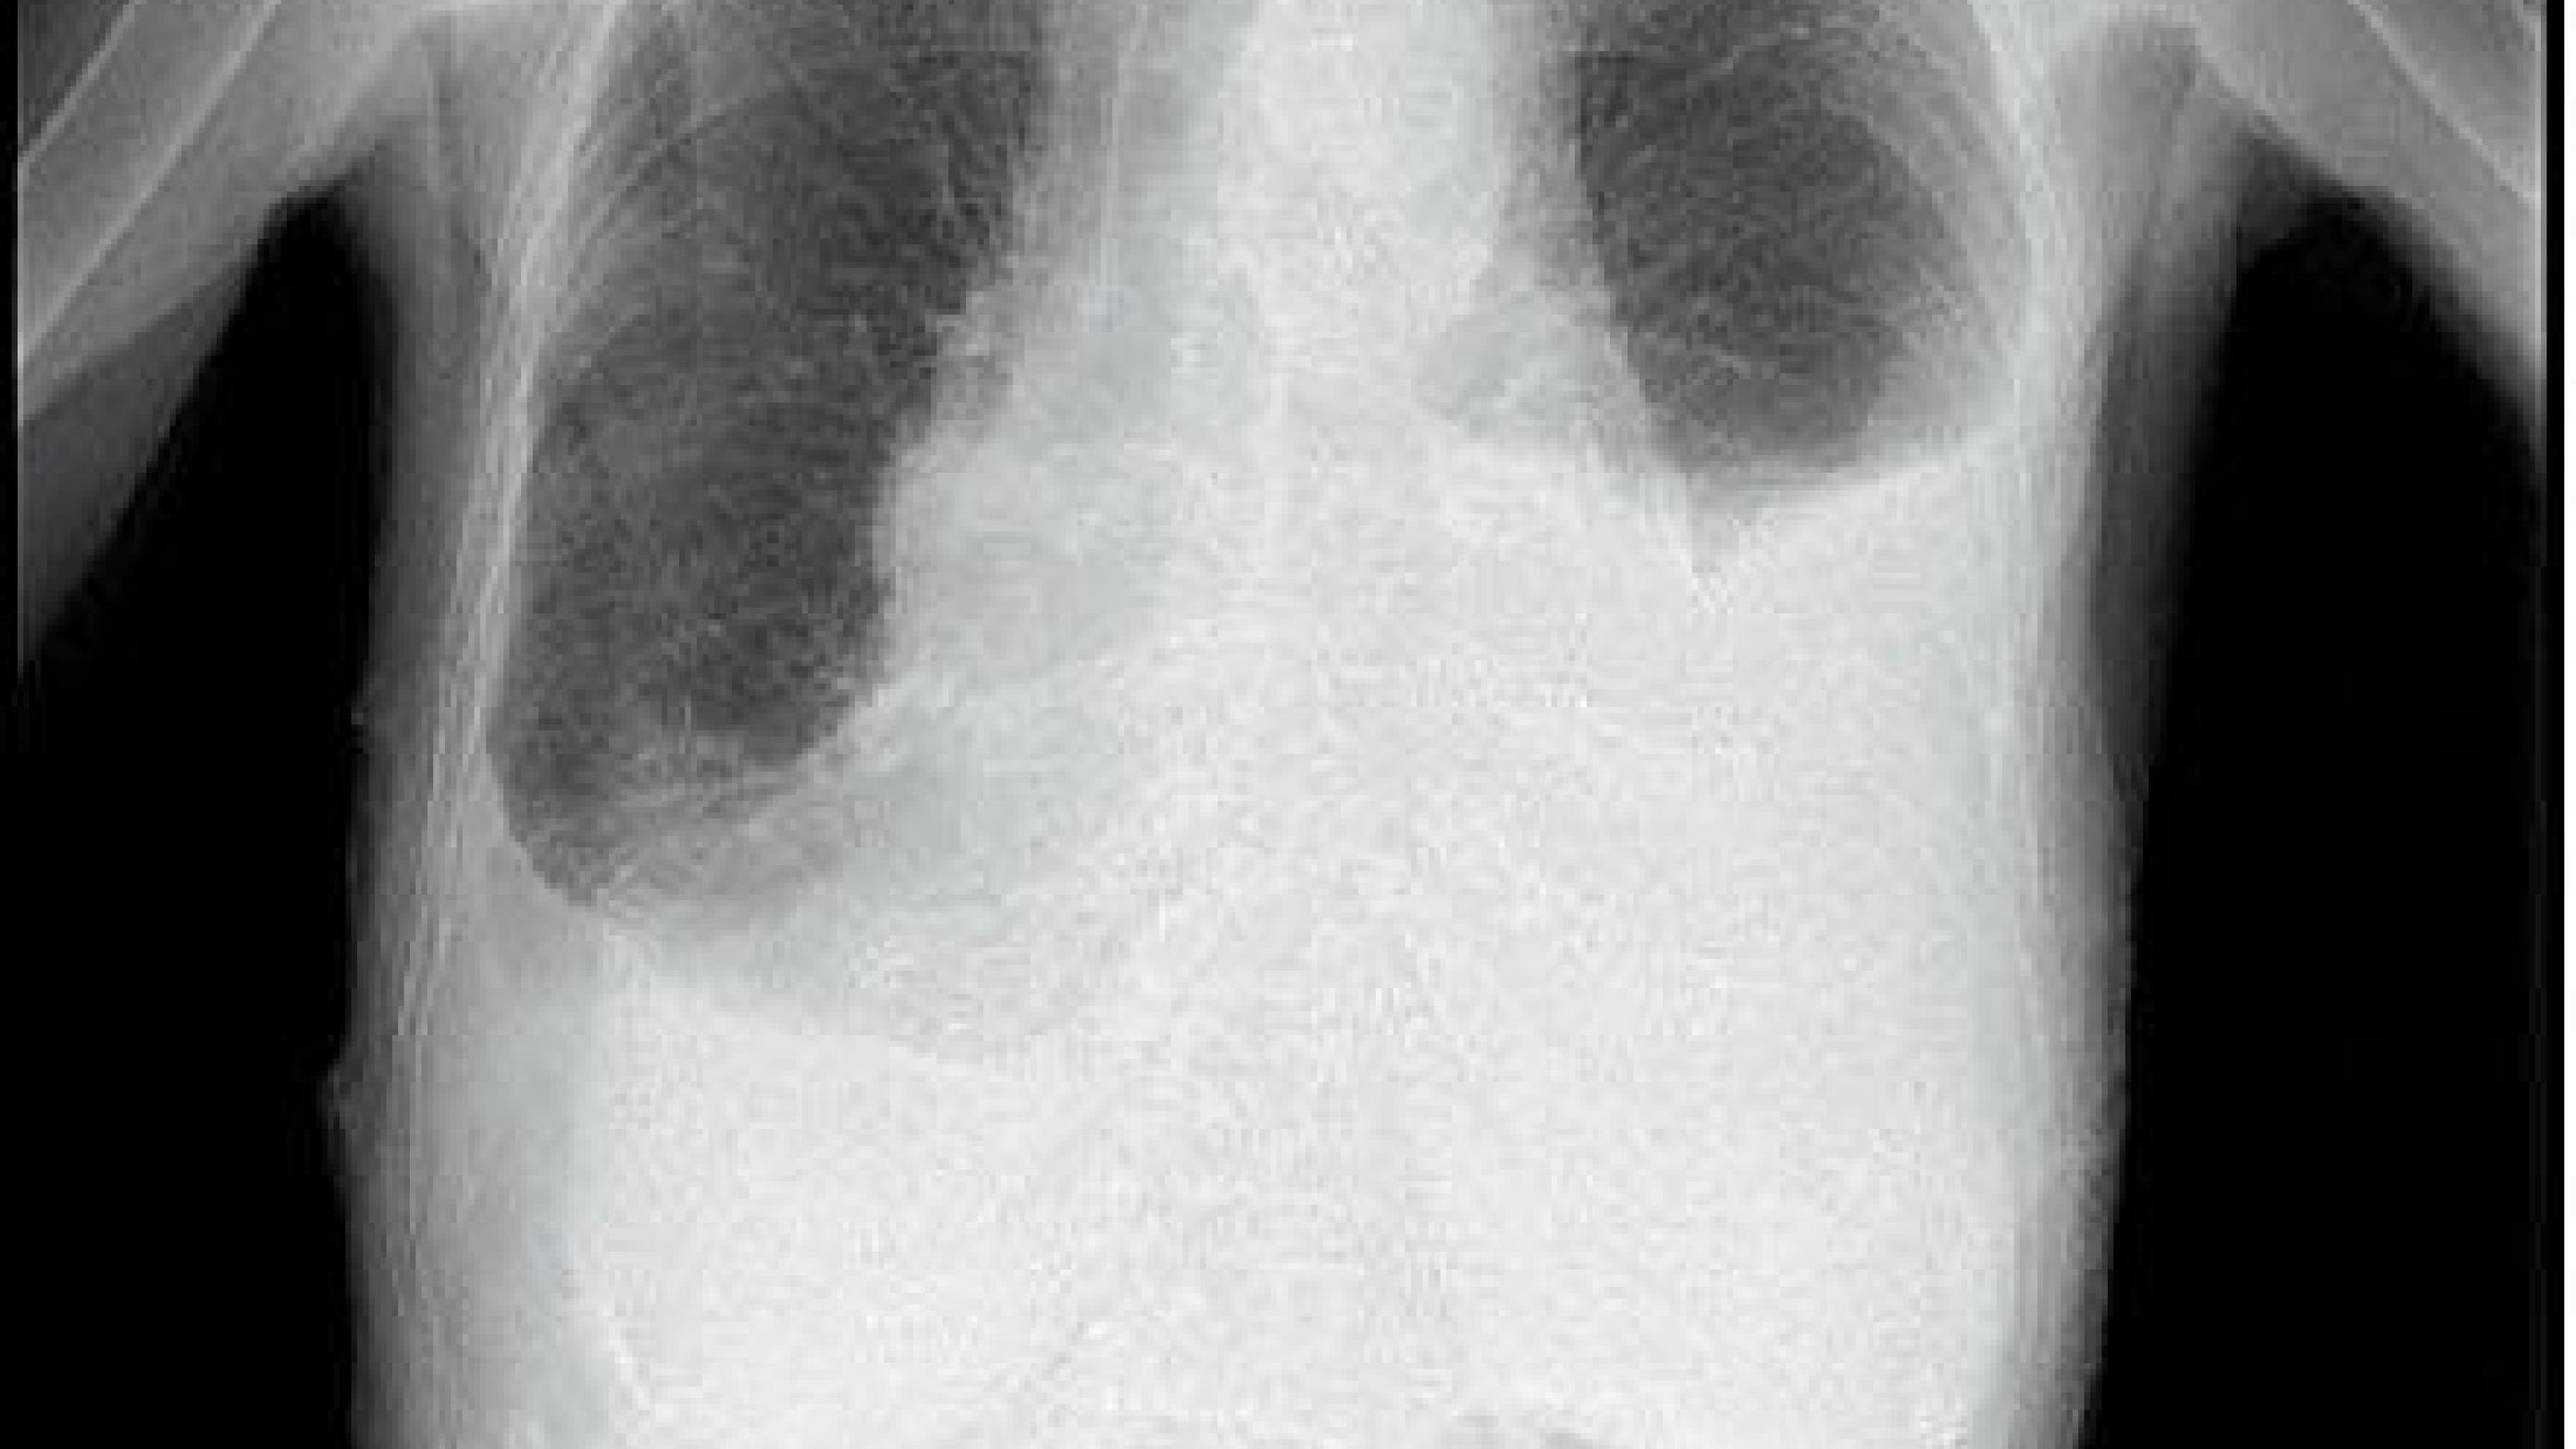 Røntgenbillede af thorax med udtalt højresidig pleuraekssudat.